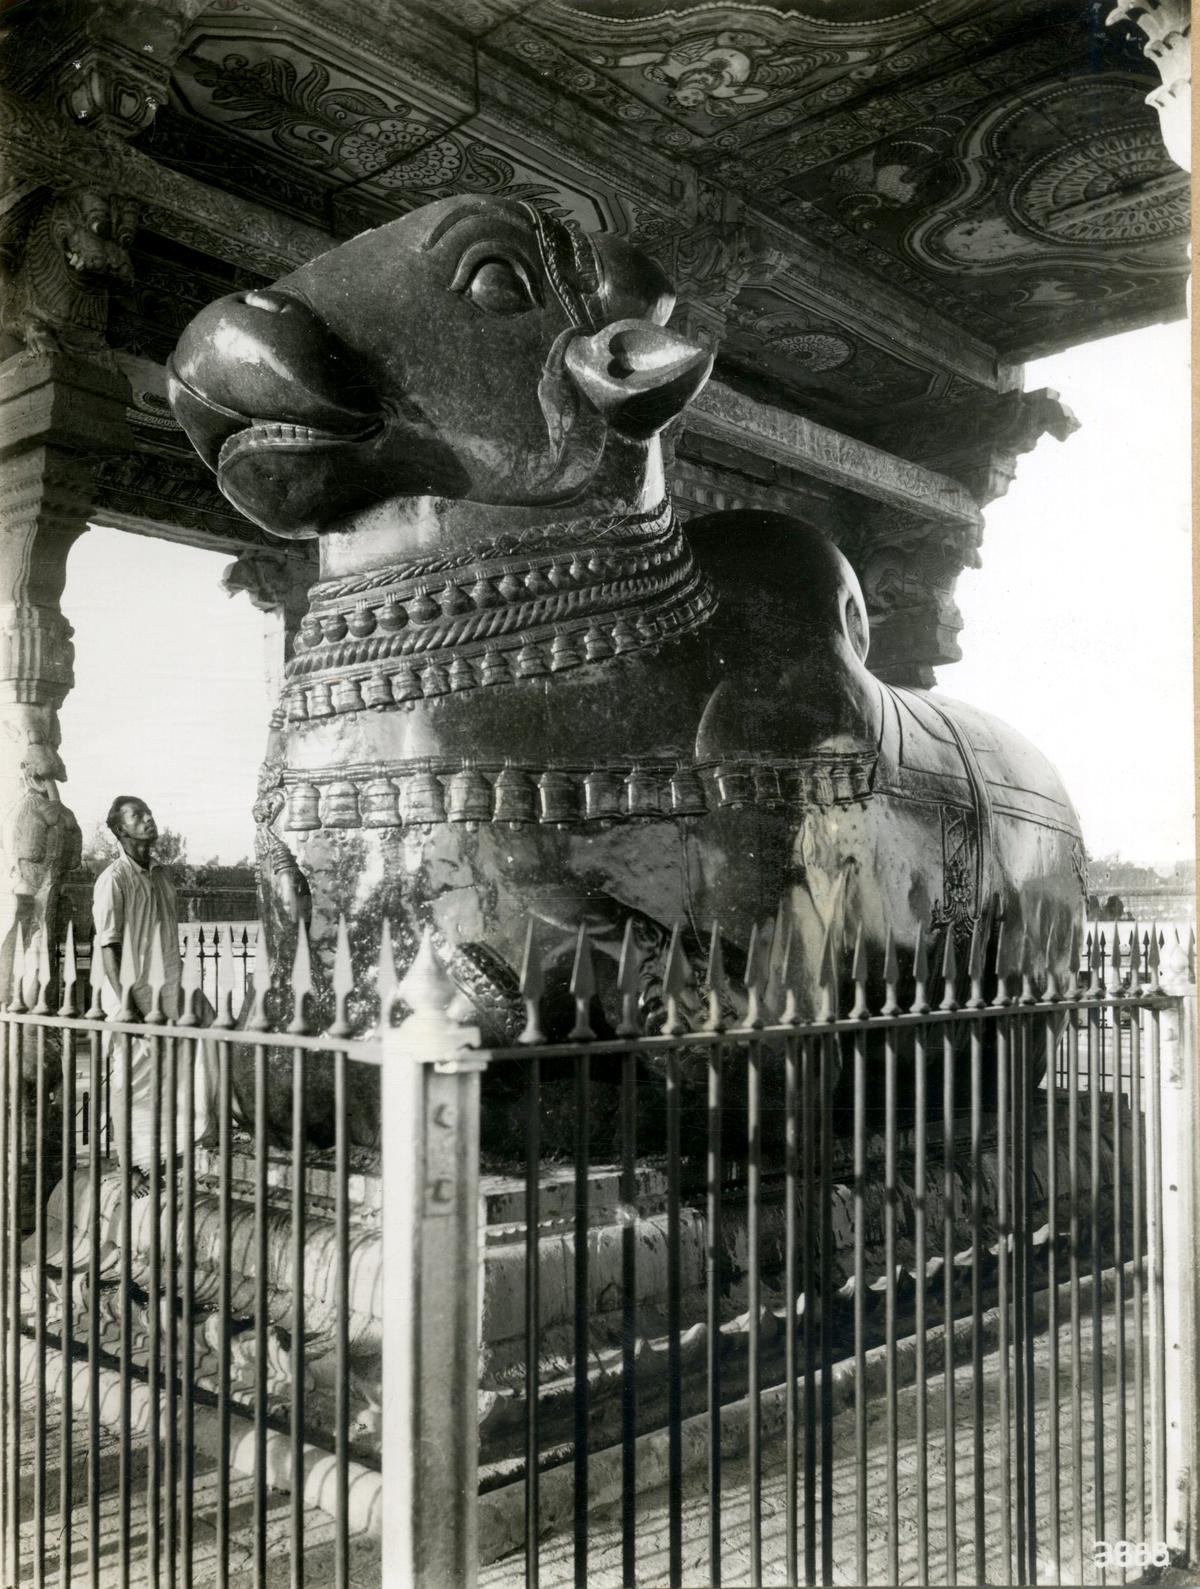 Big temple at 'Nandi' (bull) big temple in Thanjavur.